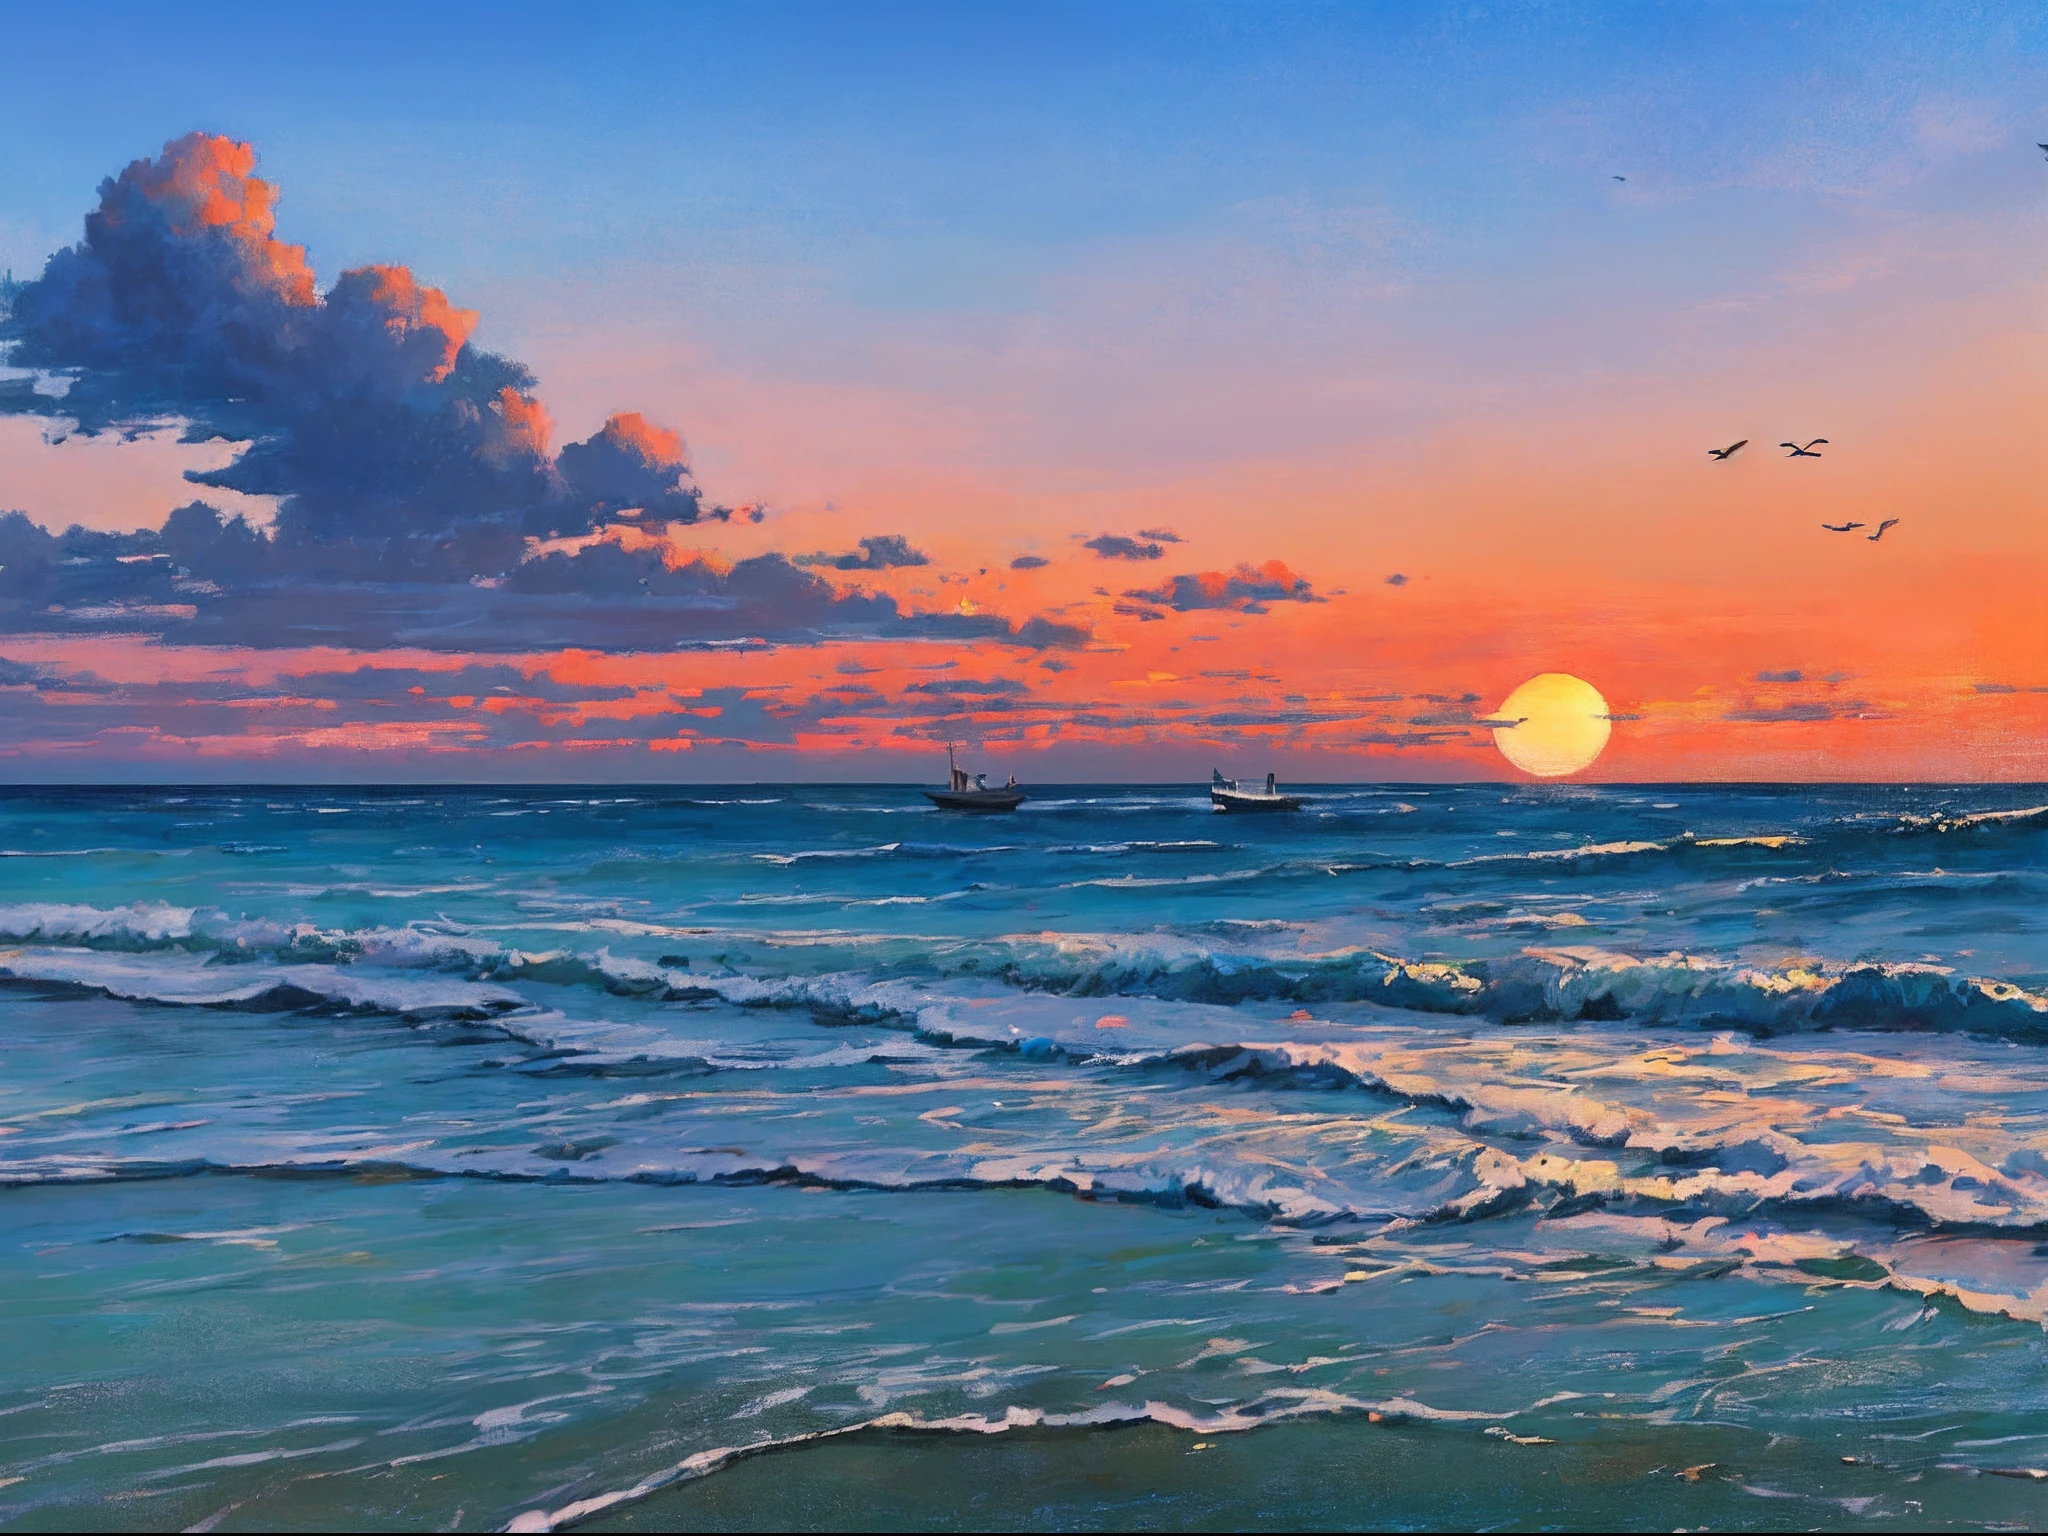 "Atemberaubendes Ölgemälde einer Strandlandschaft mit einem ruhigen Sonnenaufgang, sanfte Wellen, ein entferntes Boot, ein malerischer Aussichtsturm, Wolken, und anmutige Silhouetten von Vögeln, die am Himmel schweben."